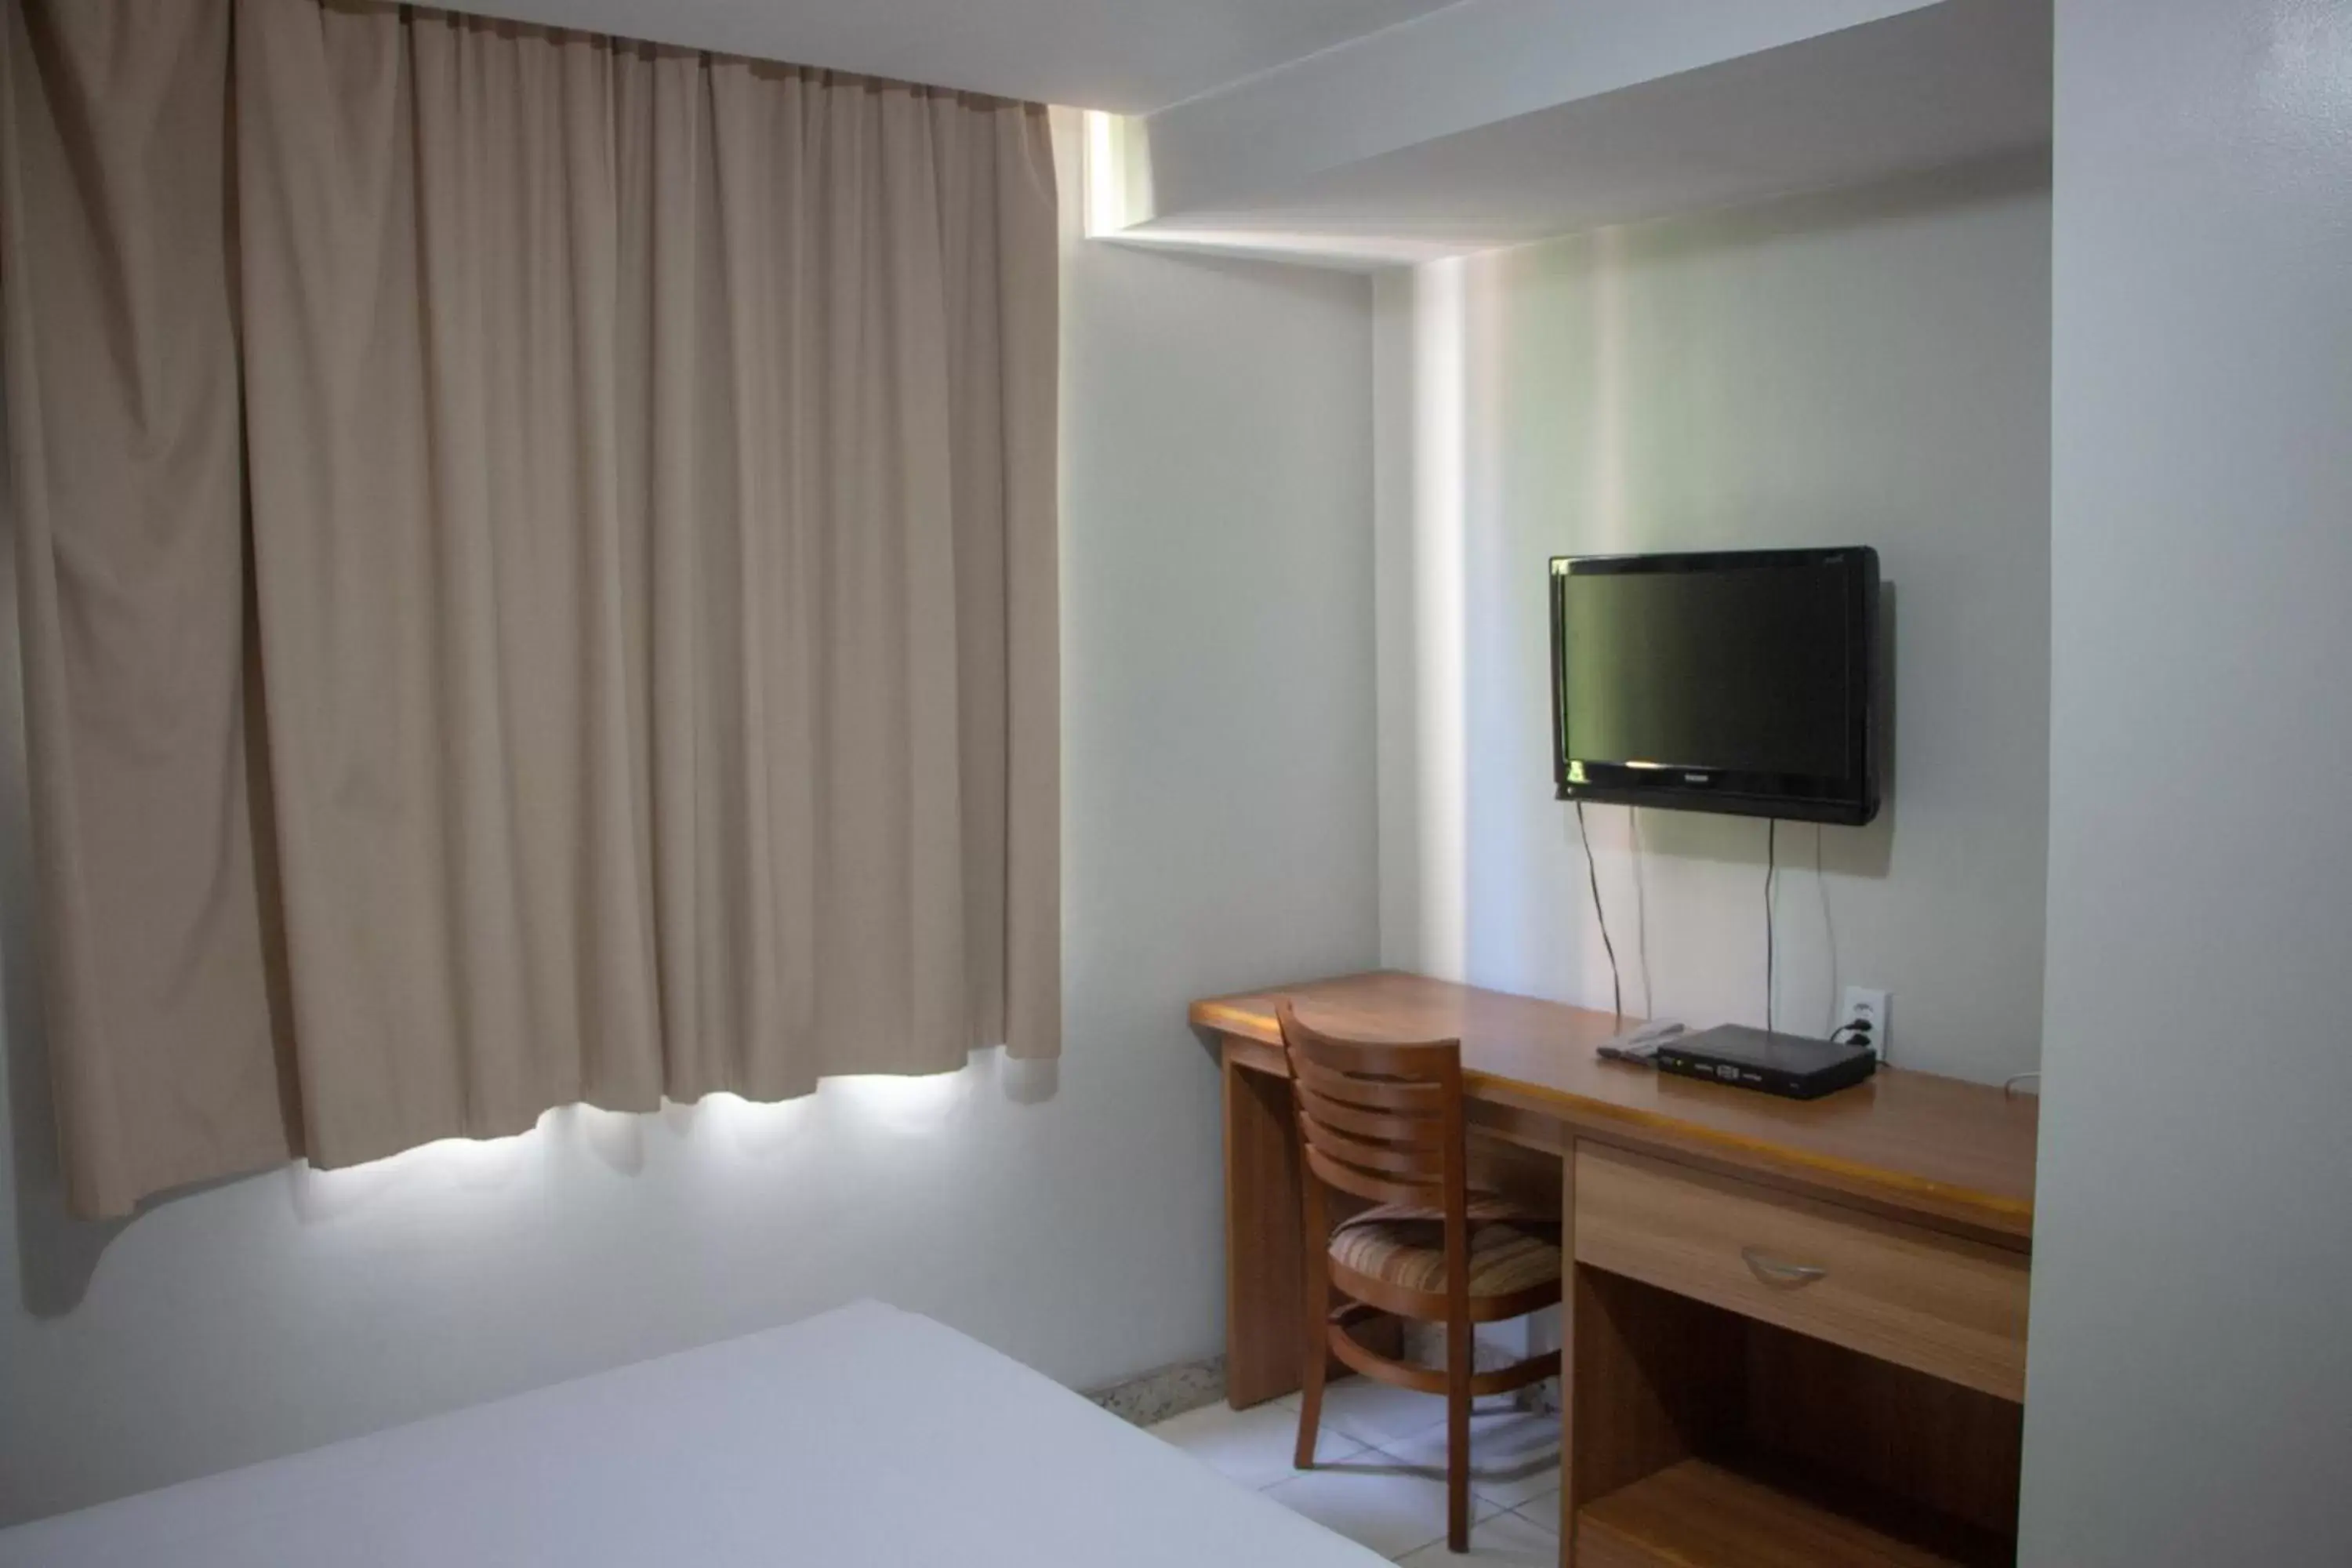 Bedroom, TV/Entertainment Center in Golden Park Rio de Janeiro Aeroporto